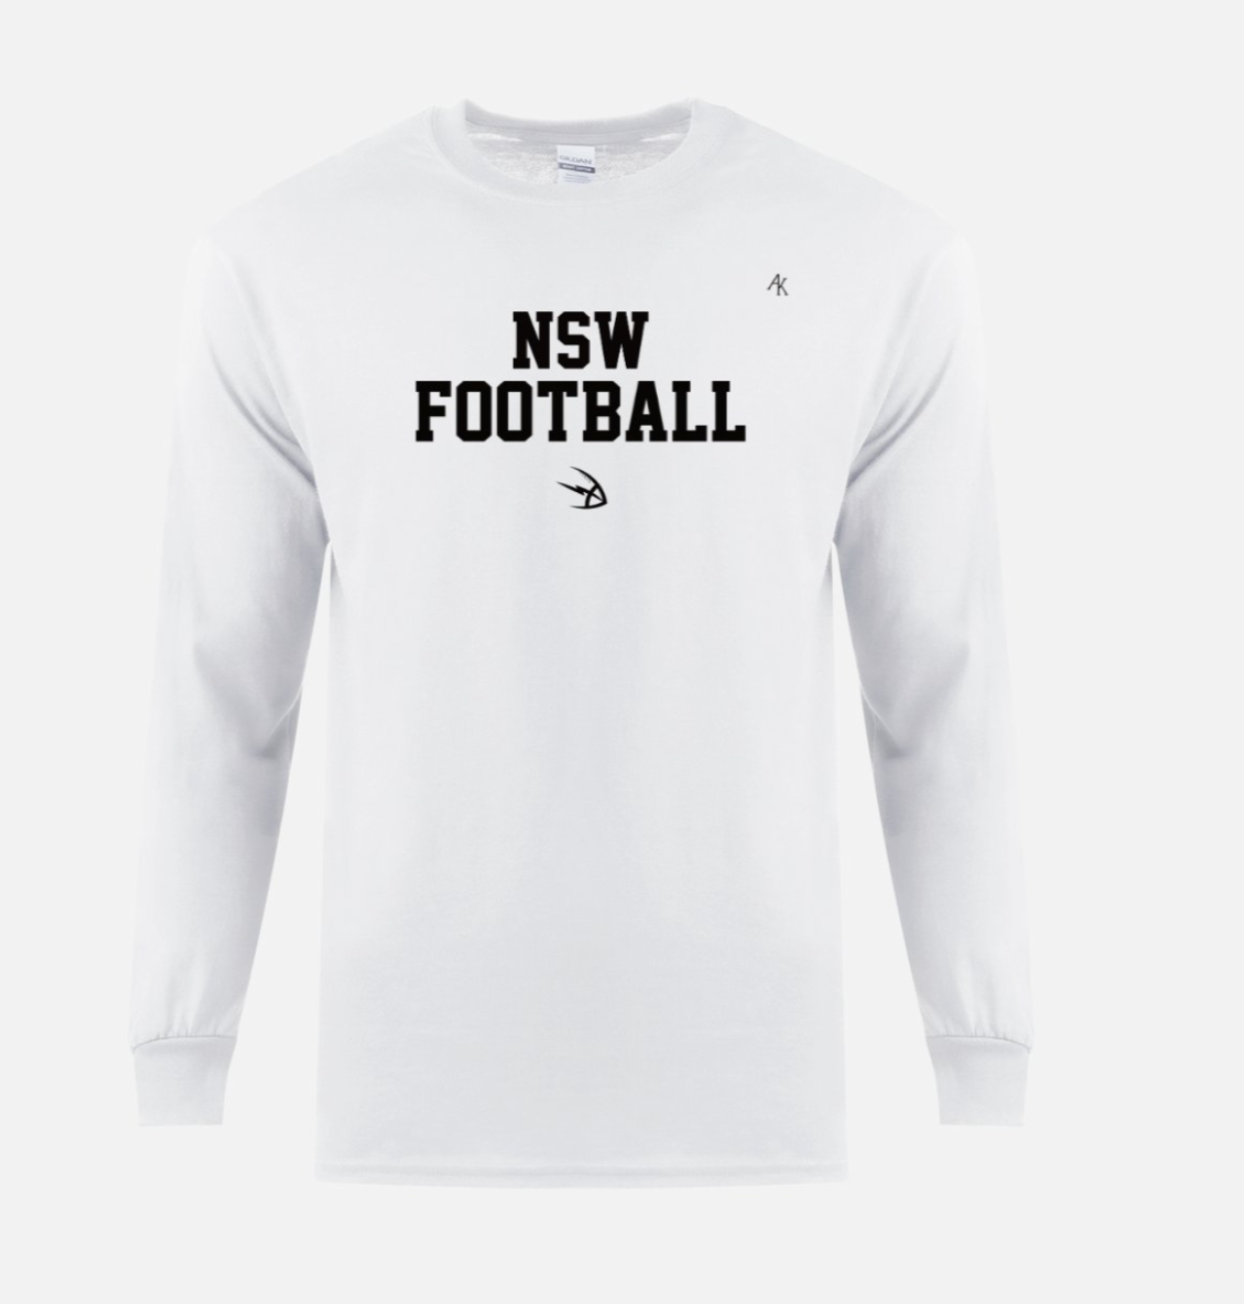 New South Wales Football Shirt